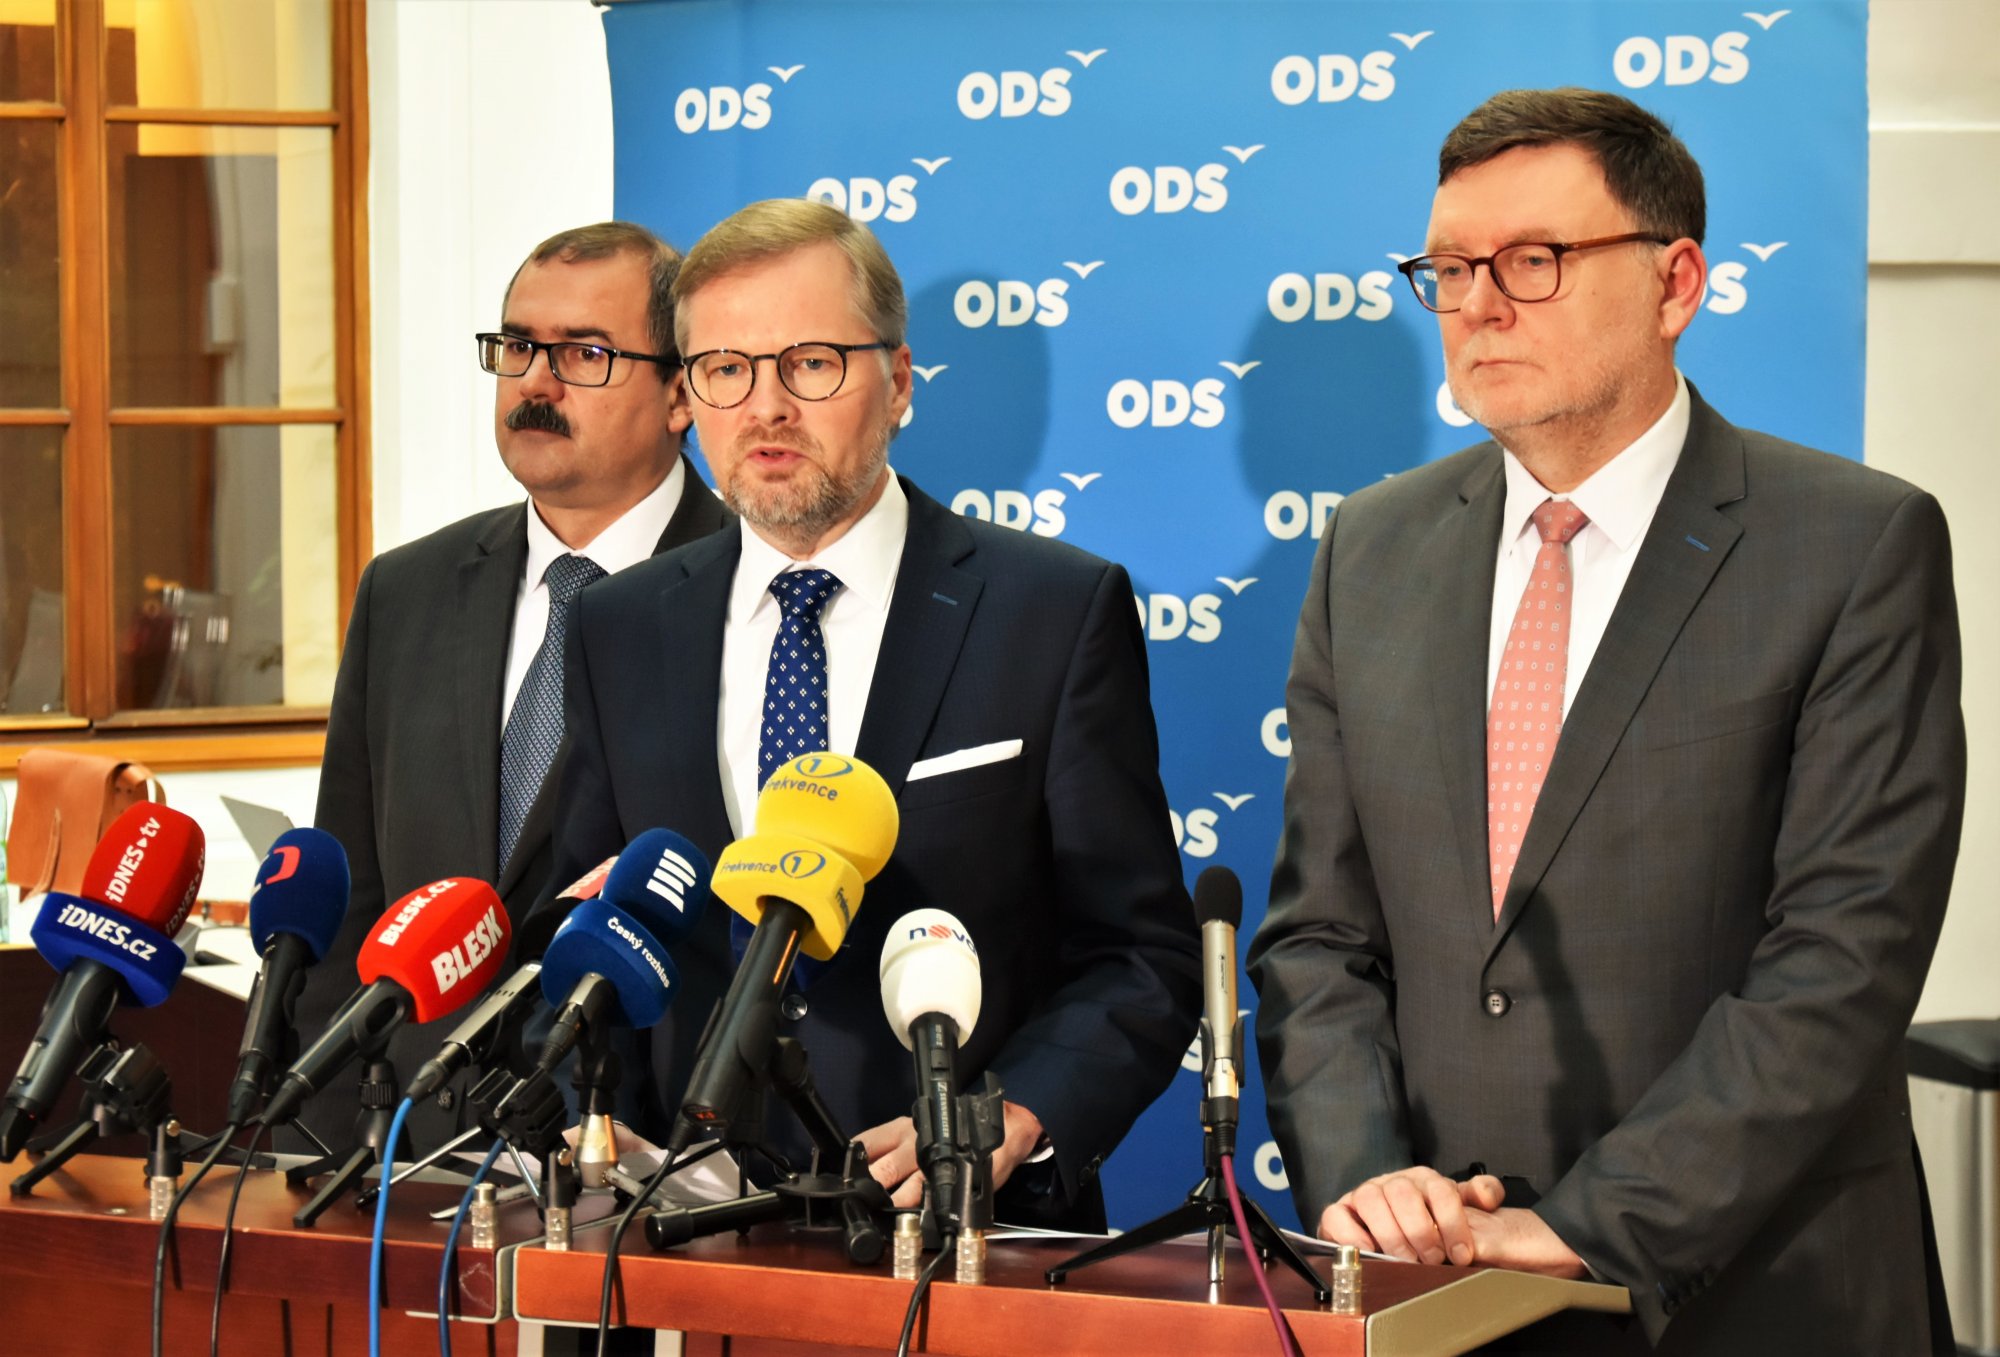 ODS: Vláda bude muset odvolání Navrátila z čela NÚKIB vysvětlit a zaručit transparentní výběr jeho nástupce